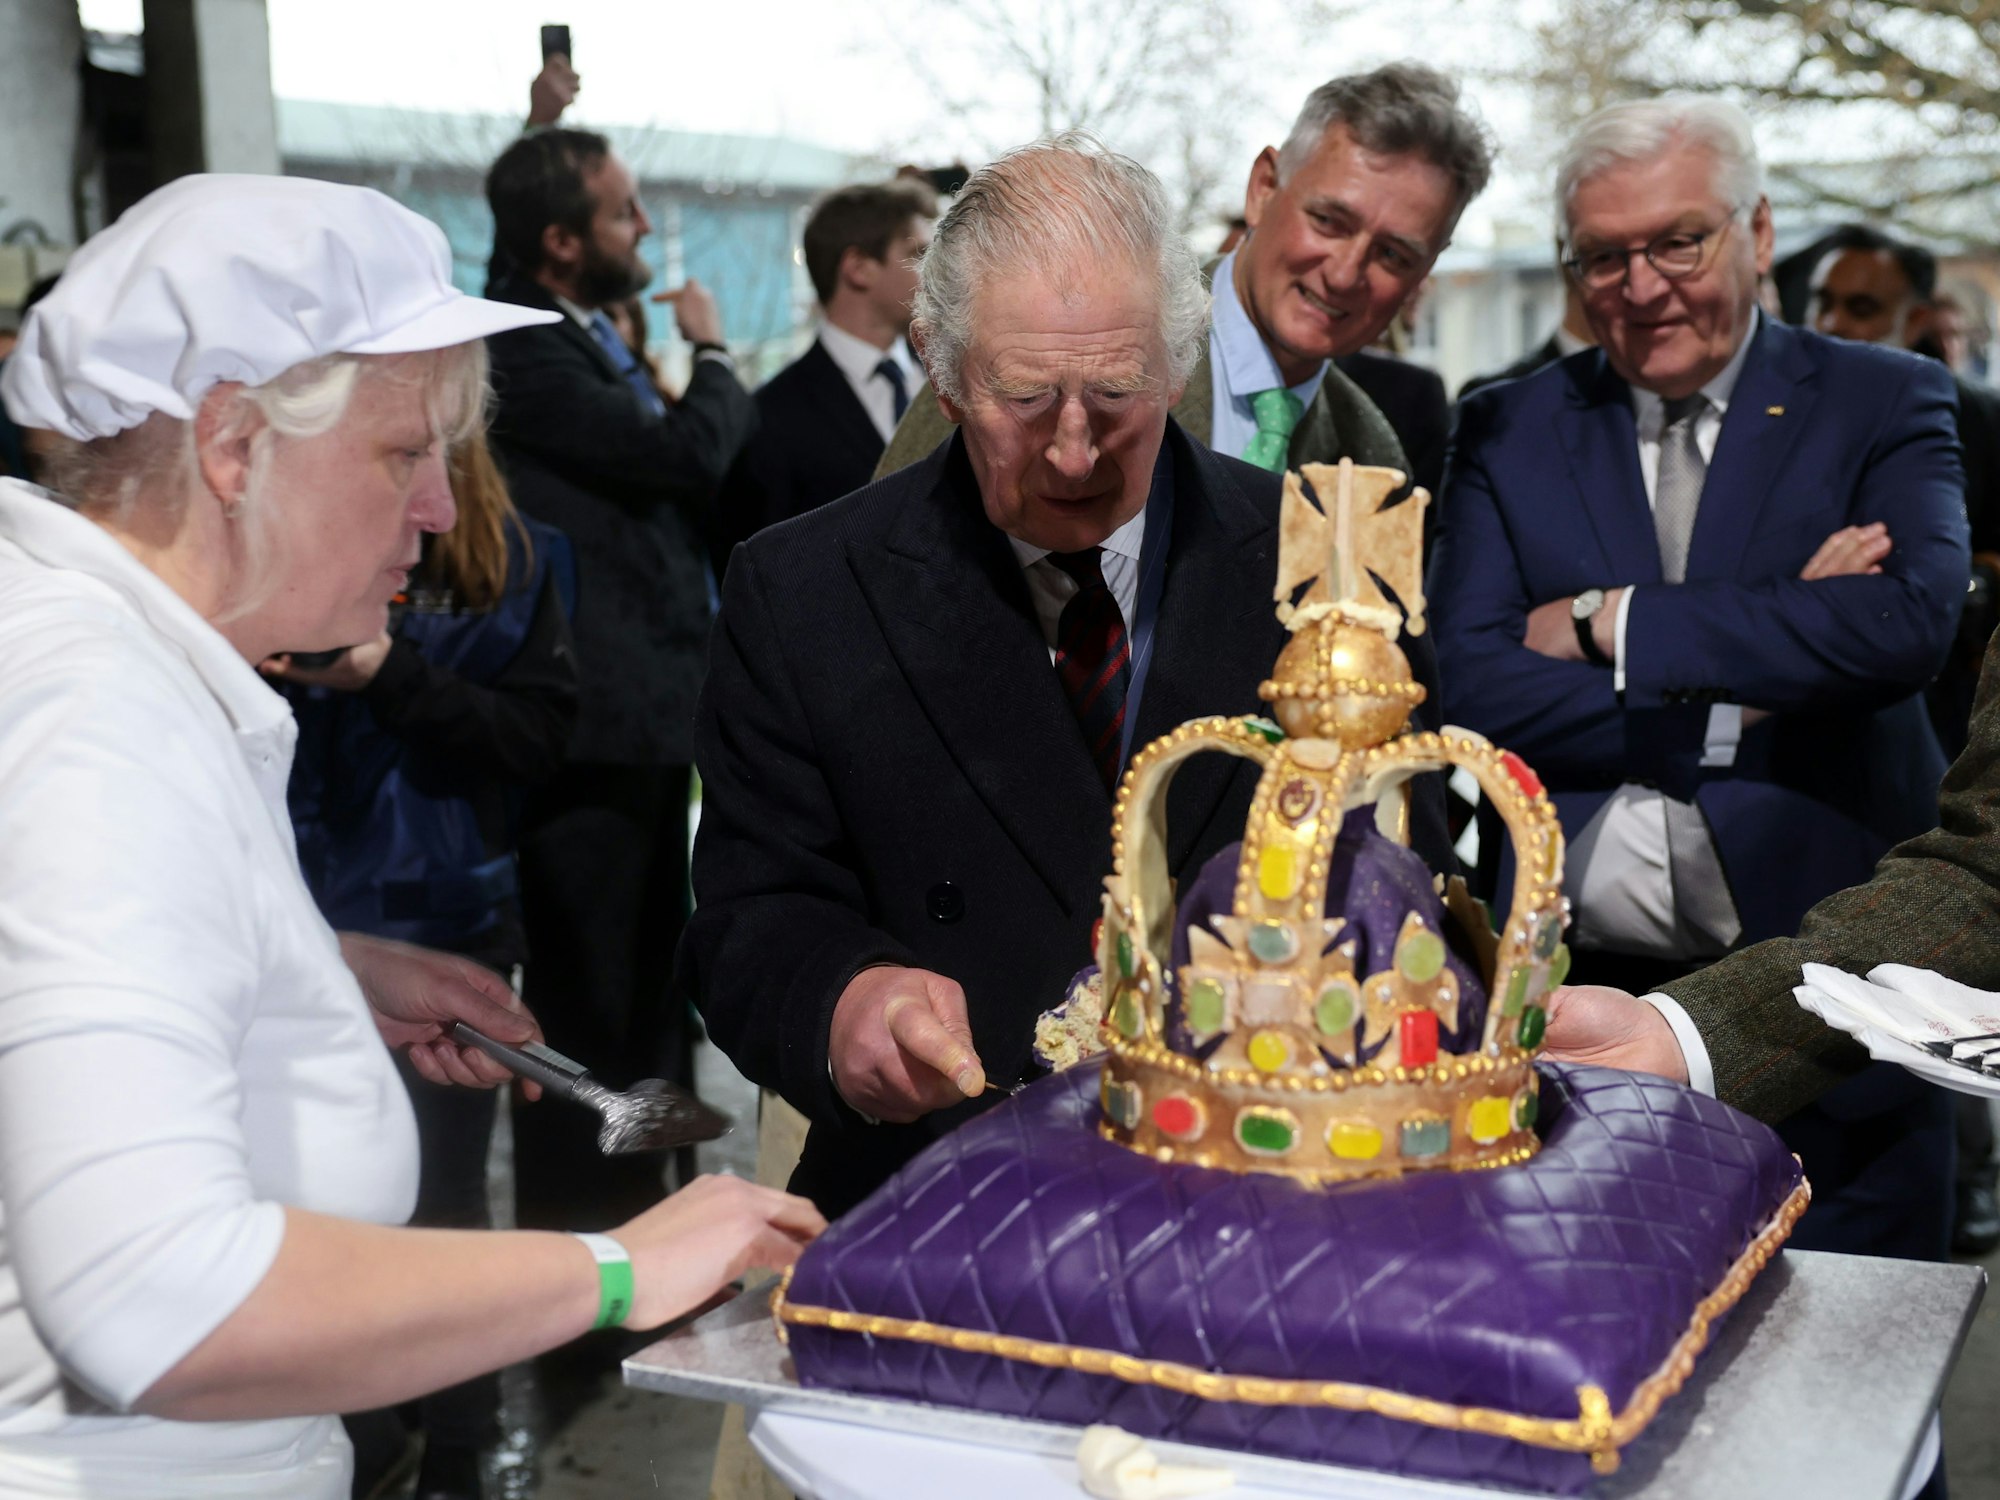 König Charles III. von Großbritannien schneidet im Ökodorf Brodowin eine Torte an, die speziell für seinen Besuch angefertigt wurde. Daneben stehen Bundespräsident Frank-Walter Steinmeier und Ludolf von Maltzan.